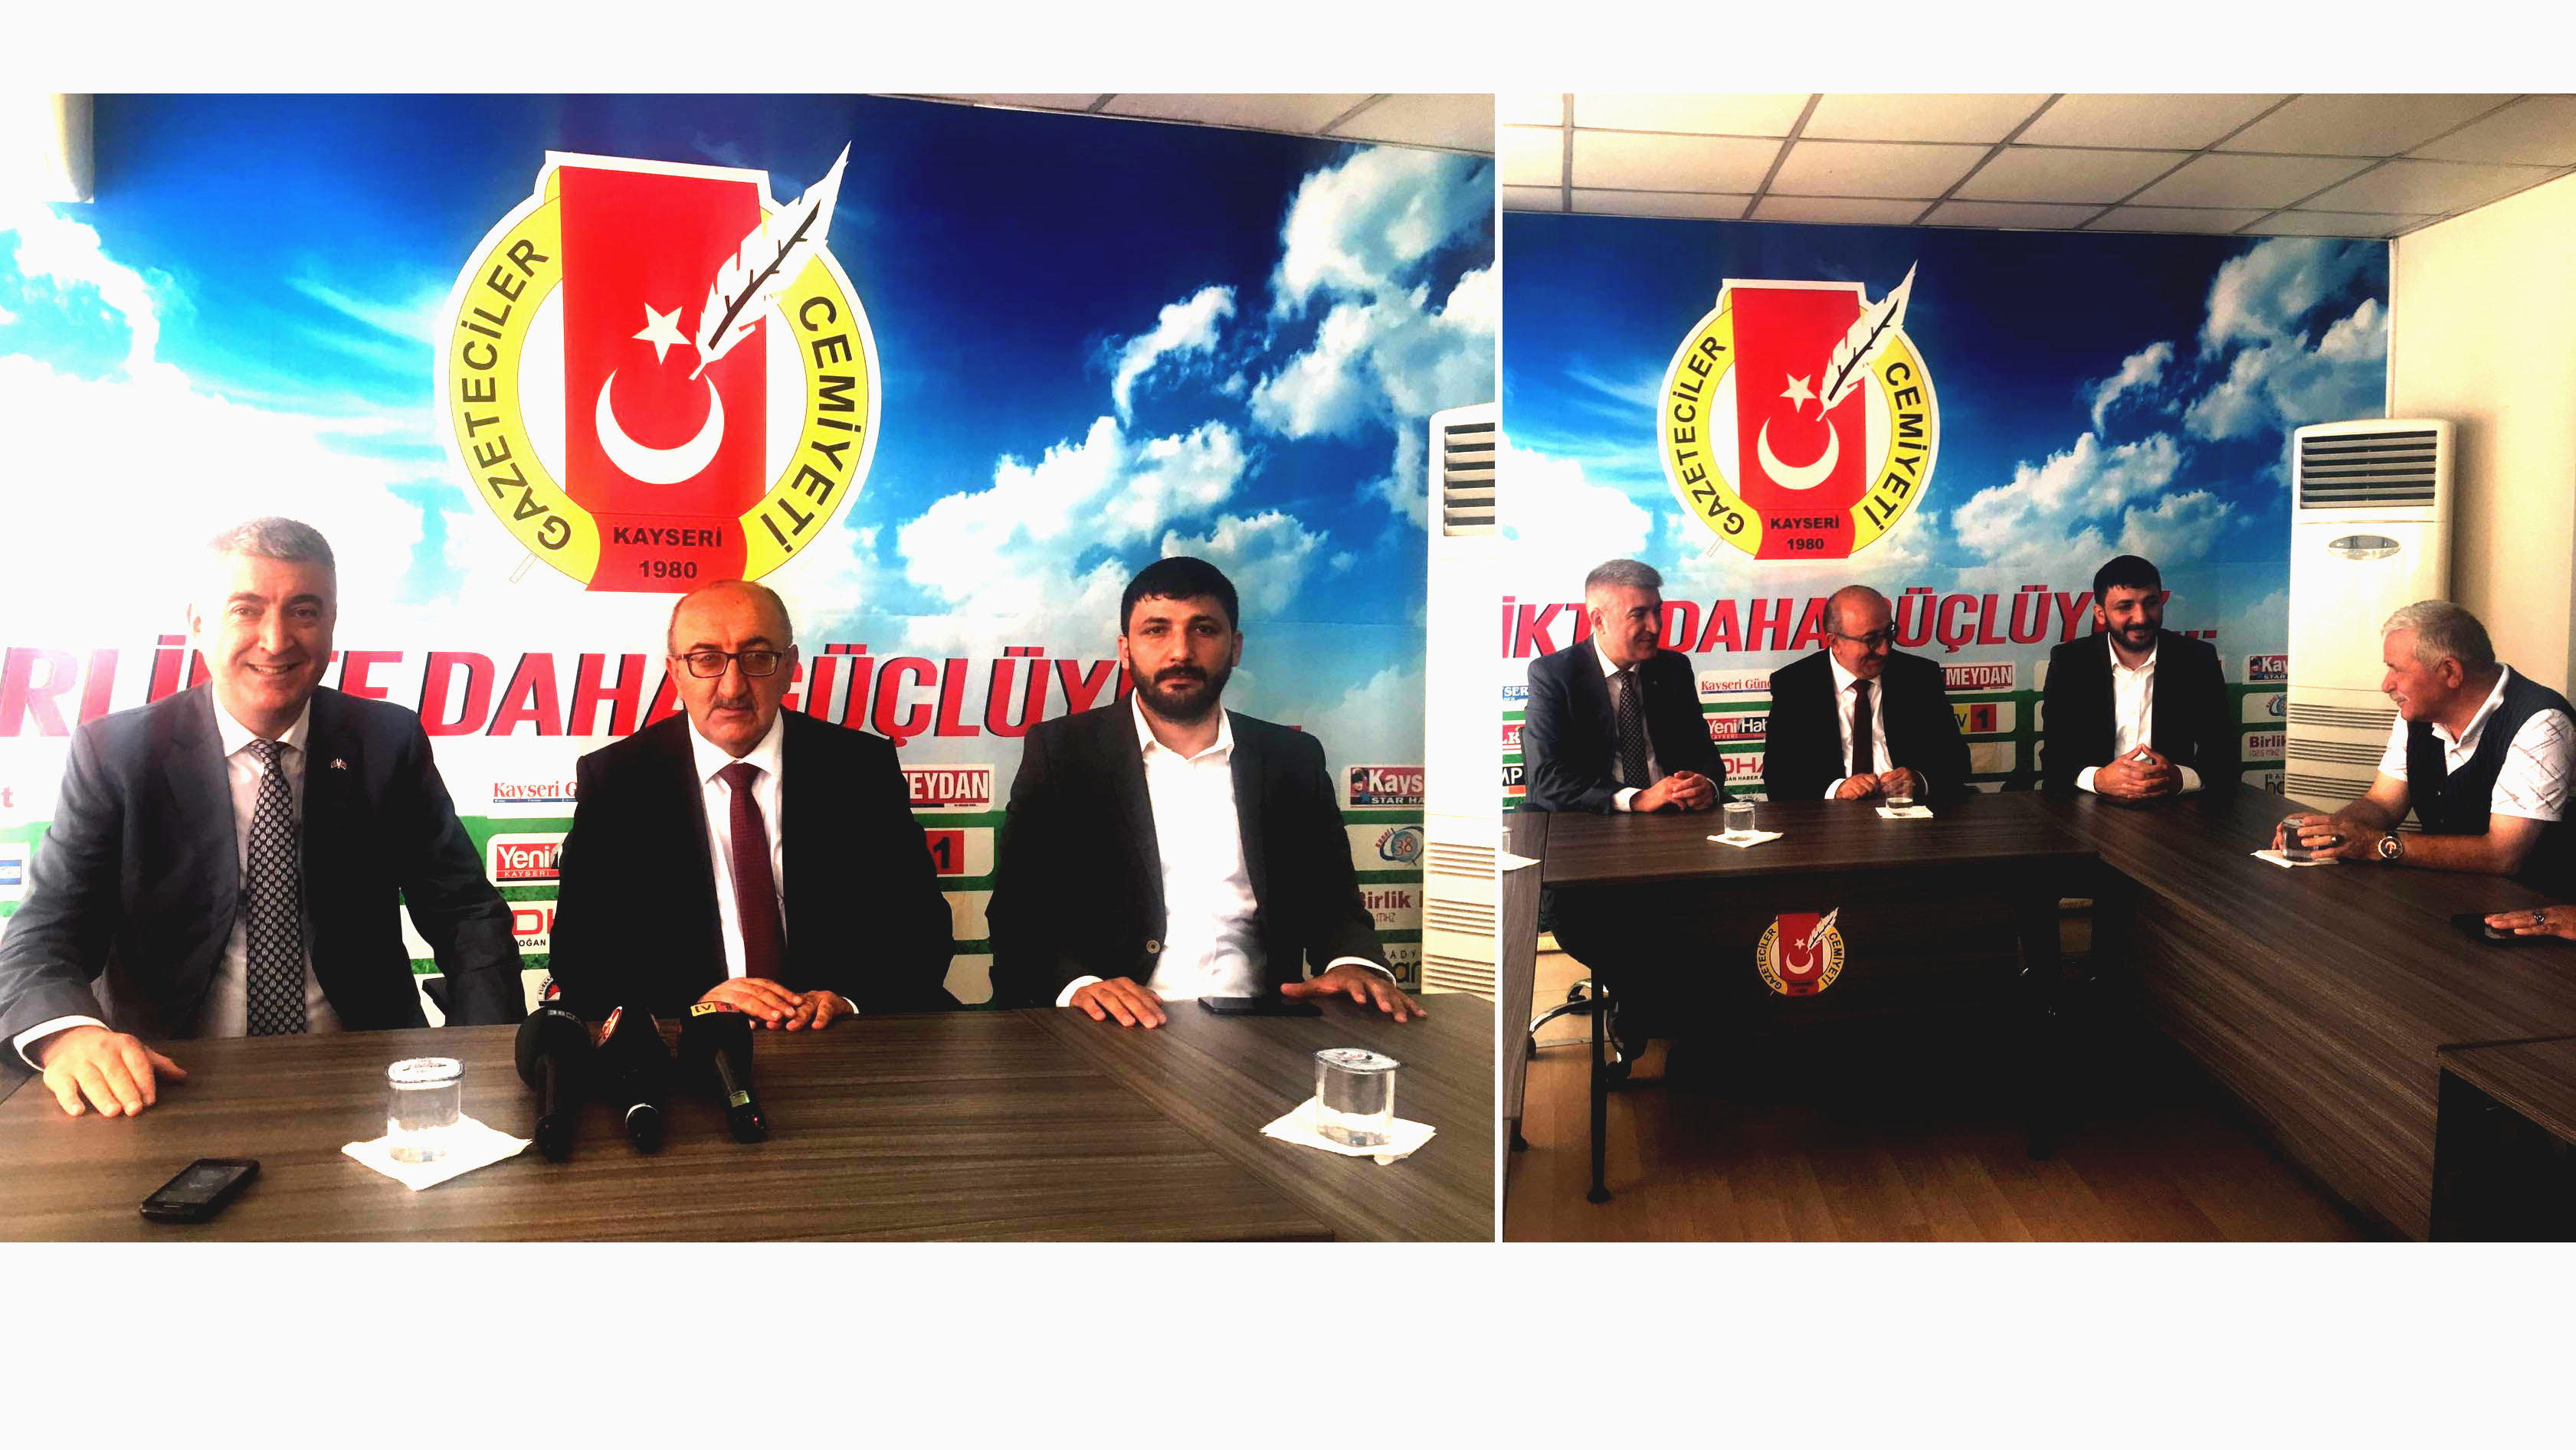 MHP İl Başkanı Serkan Tok: “Ekonomik sıkıntıları milli birlik ve milli ruh ile atlatacağız”